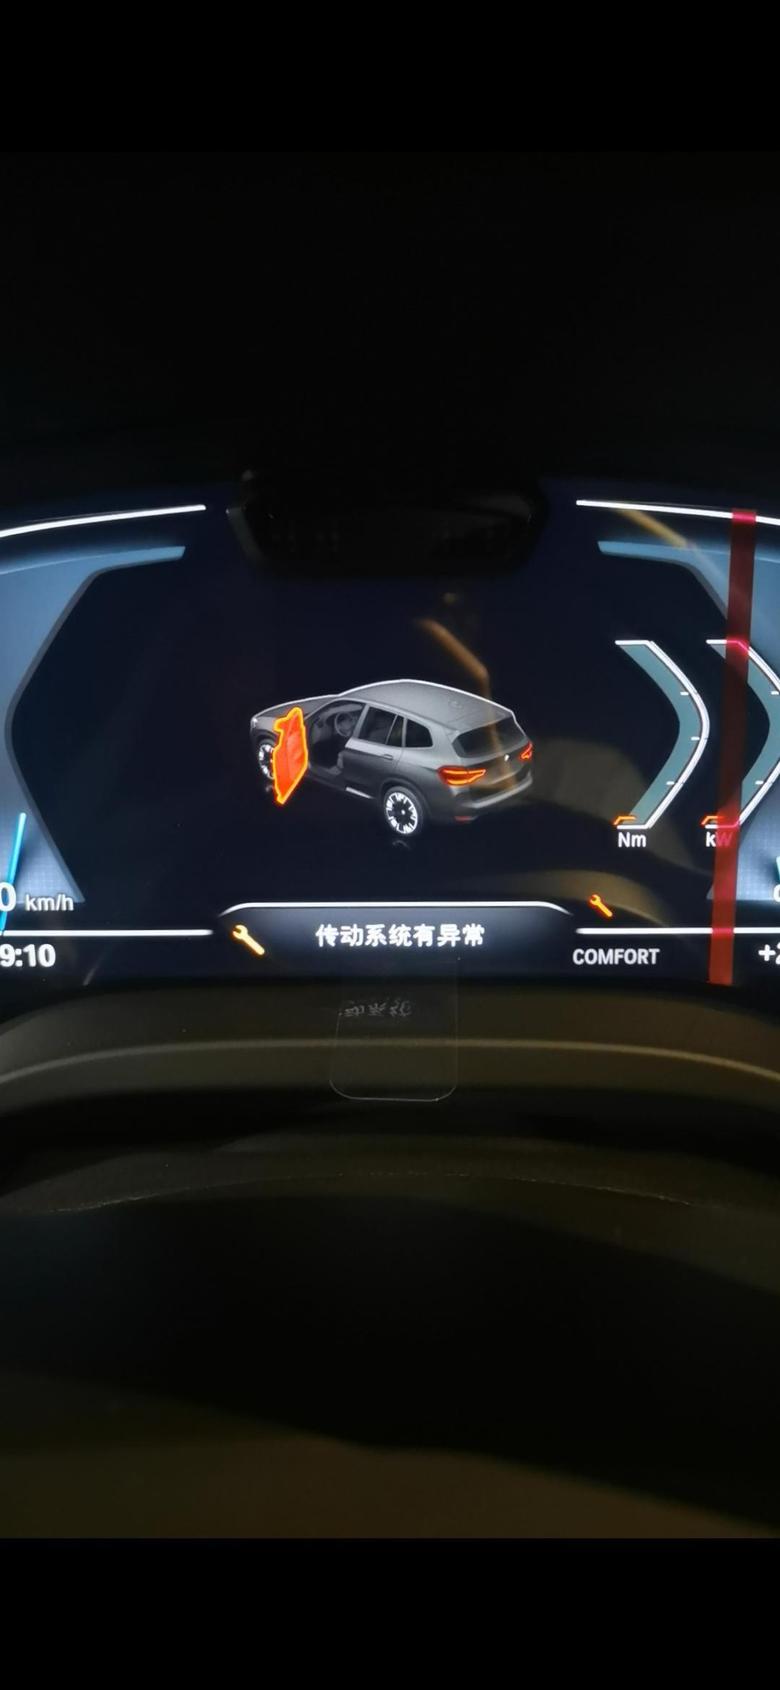 宝马ix3坐标上海，第一次充电，发生传动系统异常故障，断电后再启动又正常了4S店给安装的是国网第三方充电桩，搞不懂是车的问题还是充电桩问题